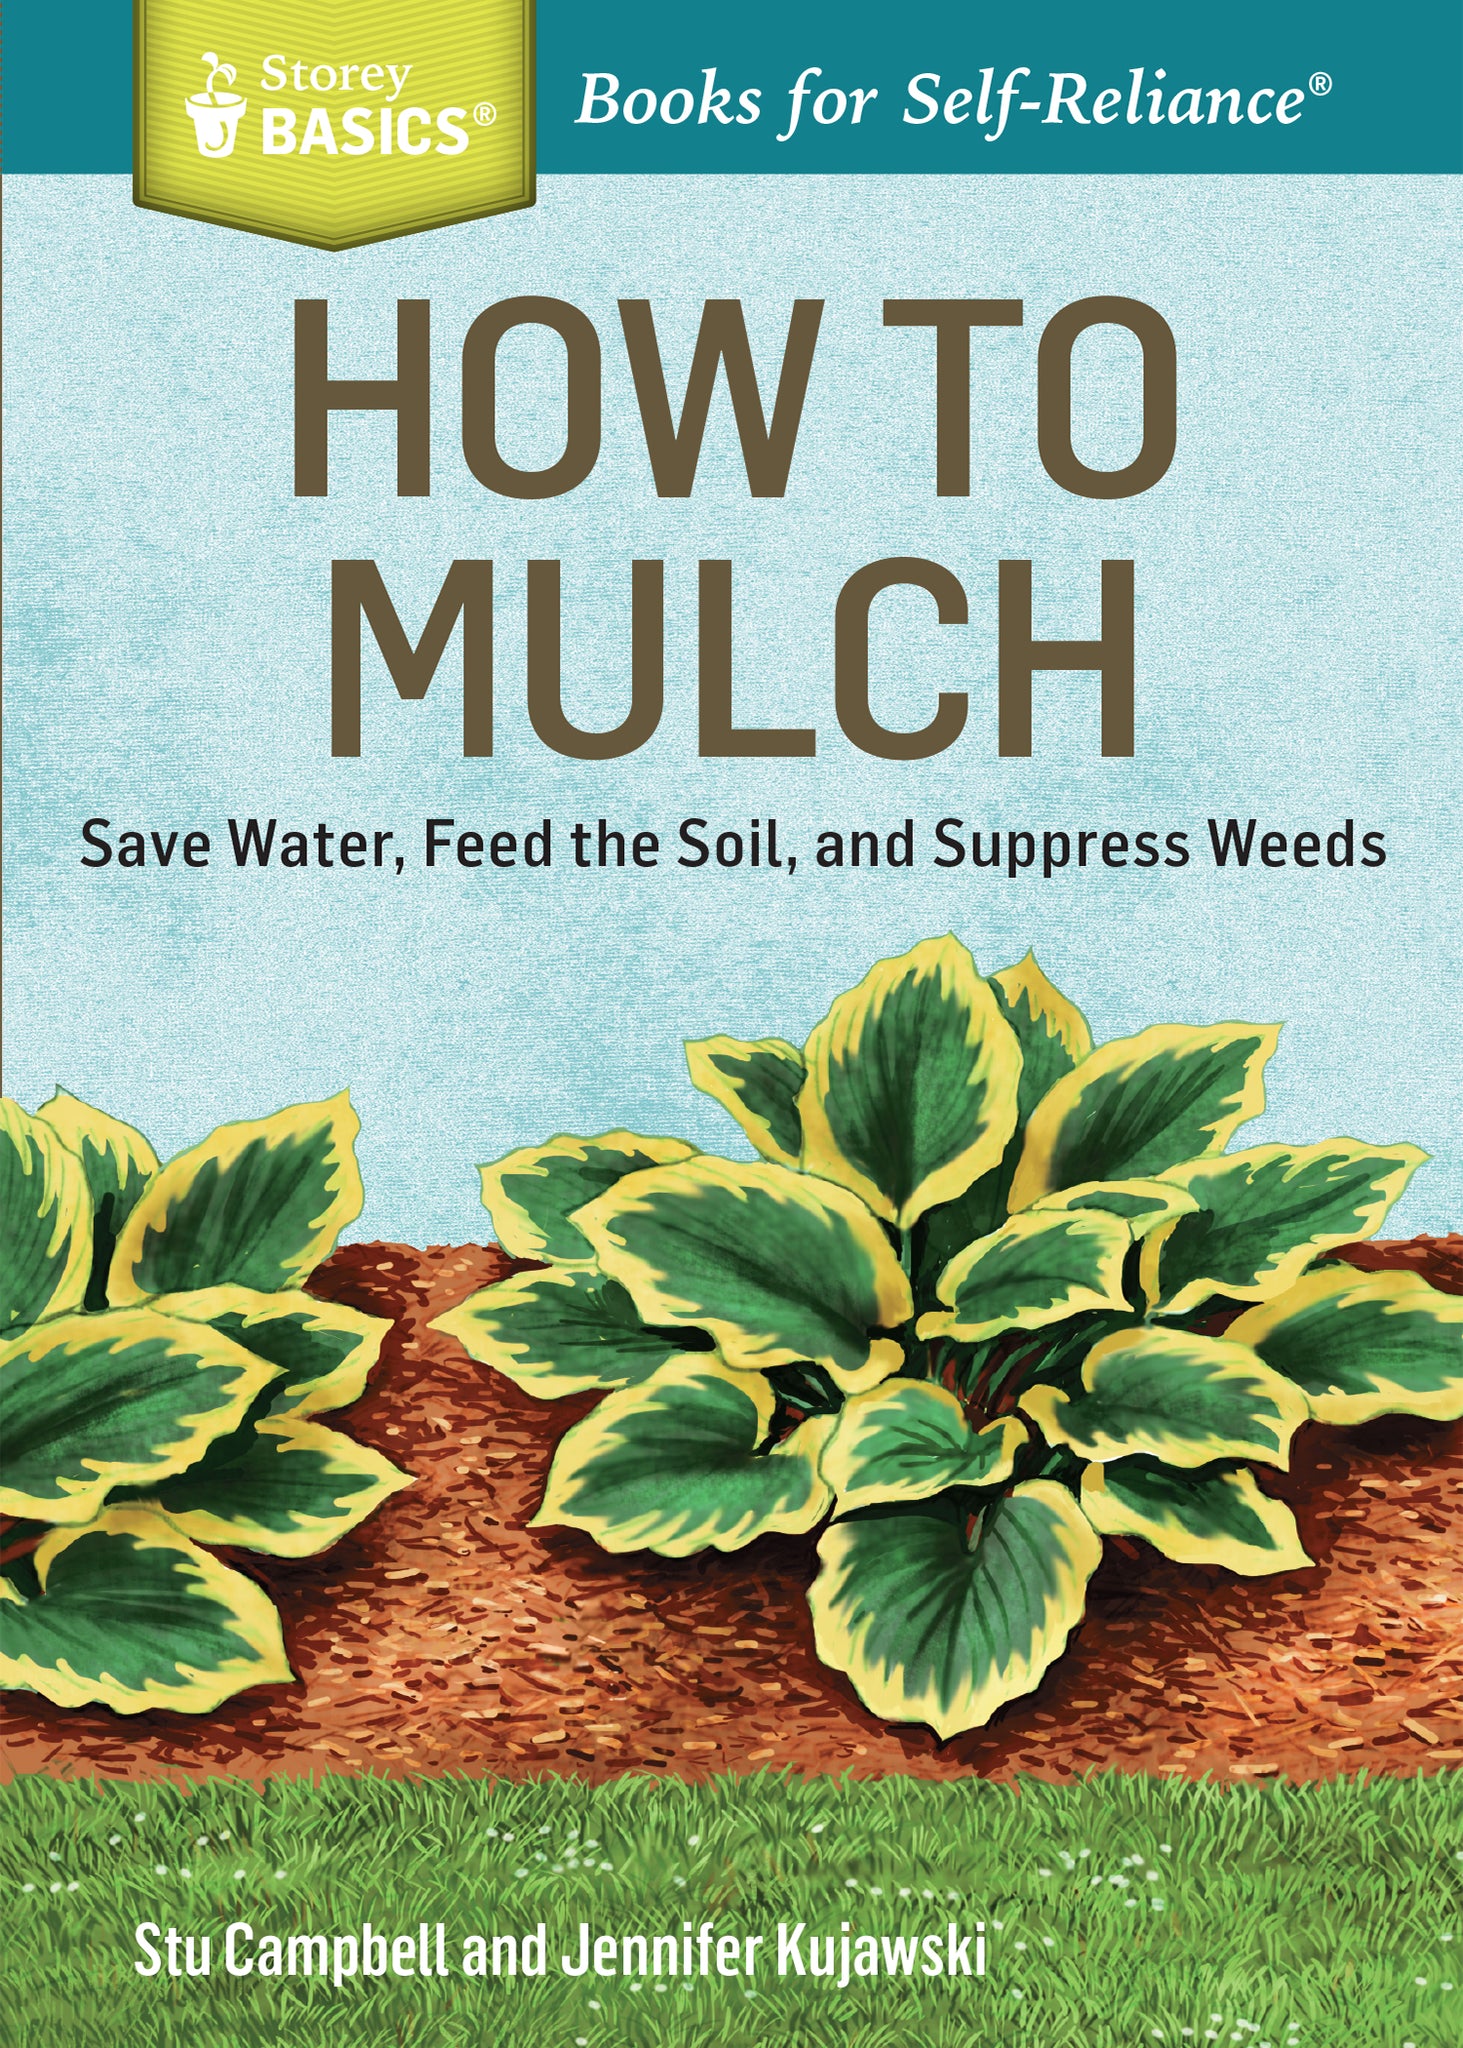 Book:  Basics:  How To Mulch by Stu Campbell and Jennifer Kujawski